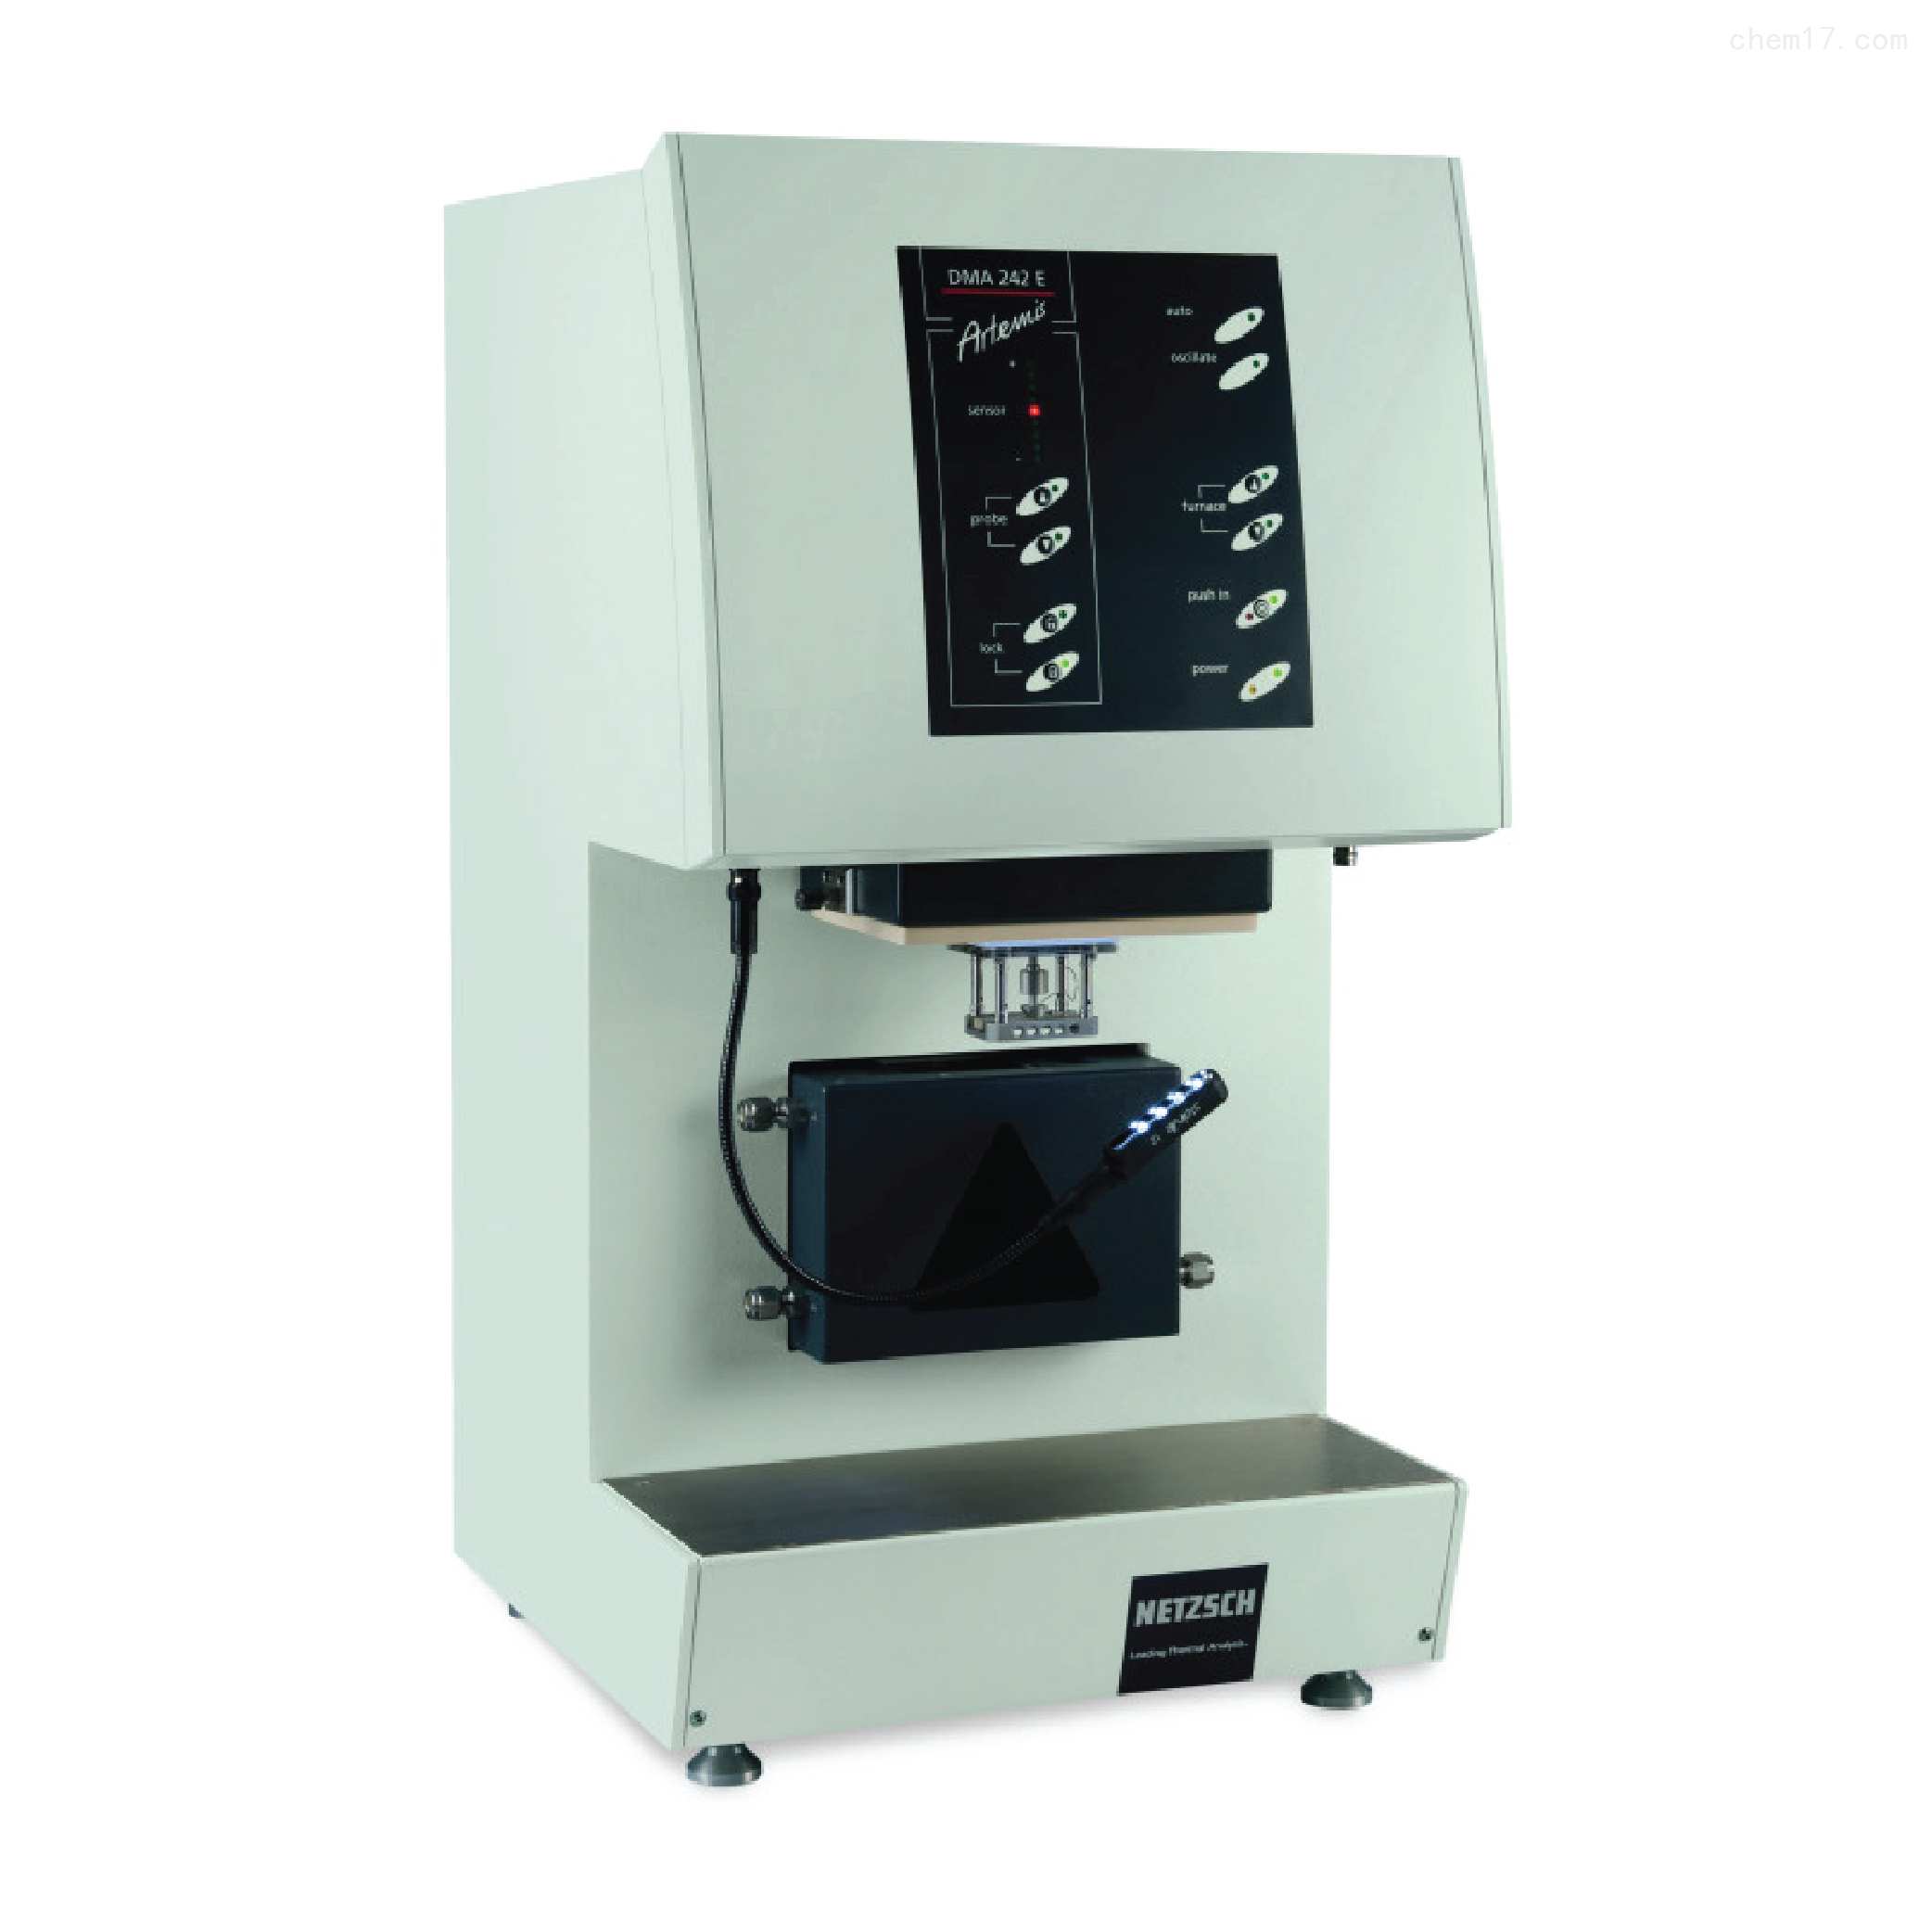 动态热机械分析仪DMA242E